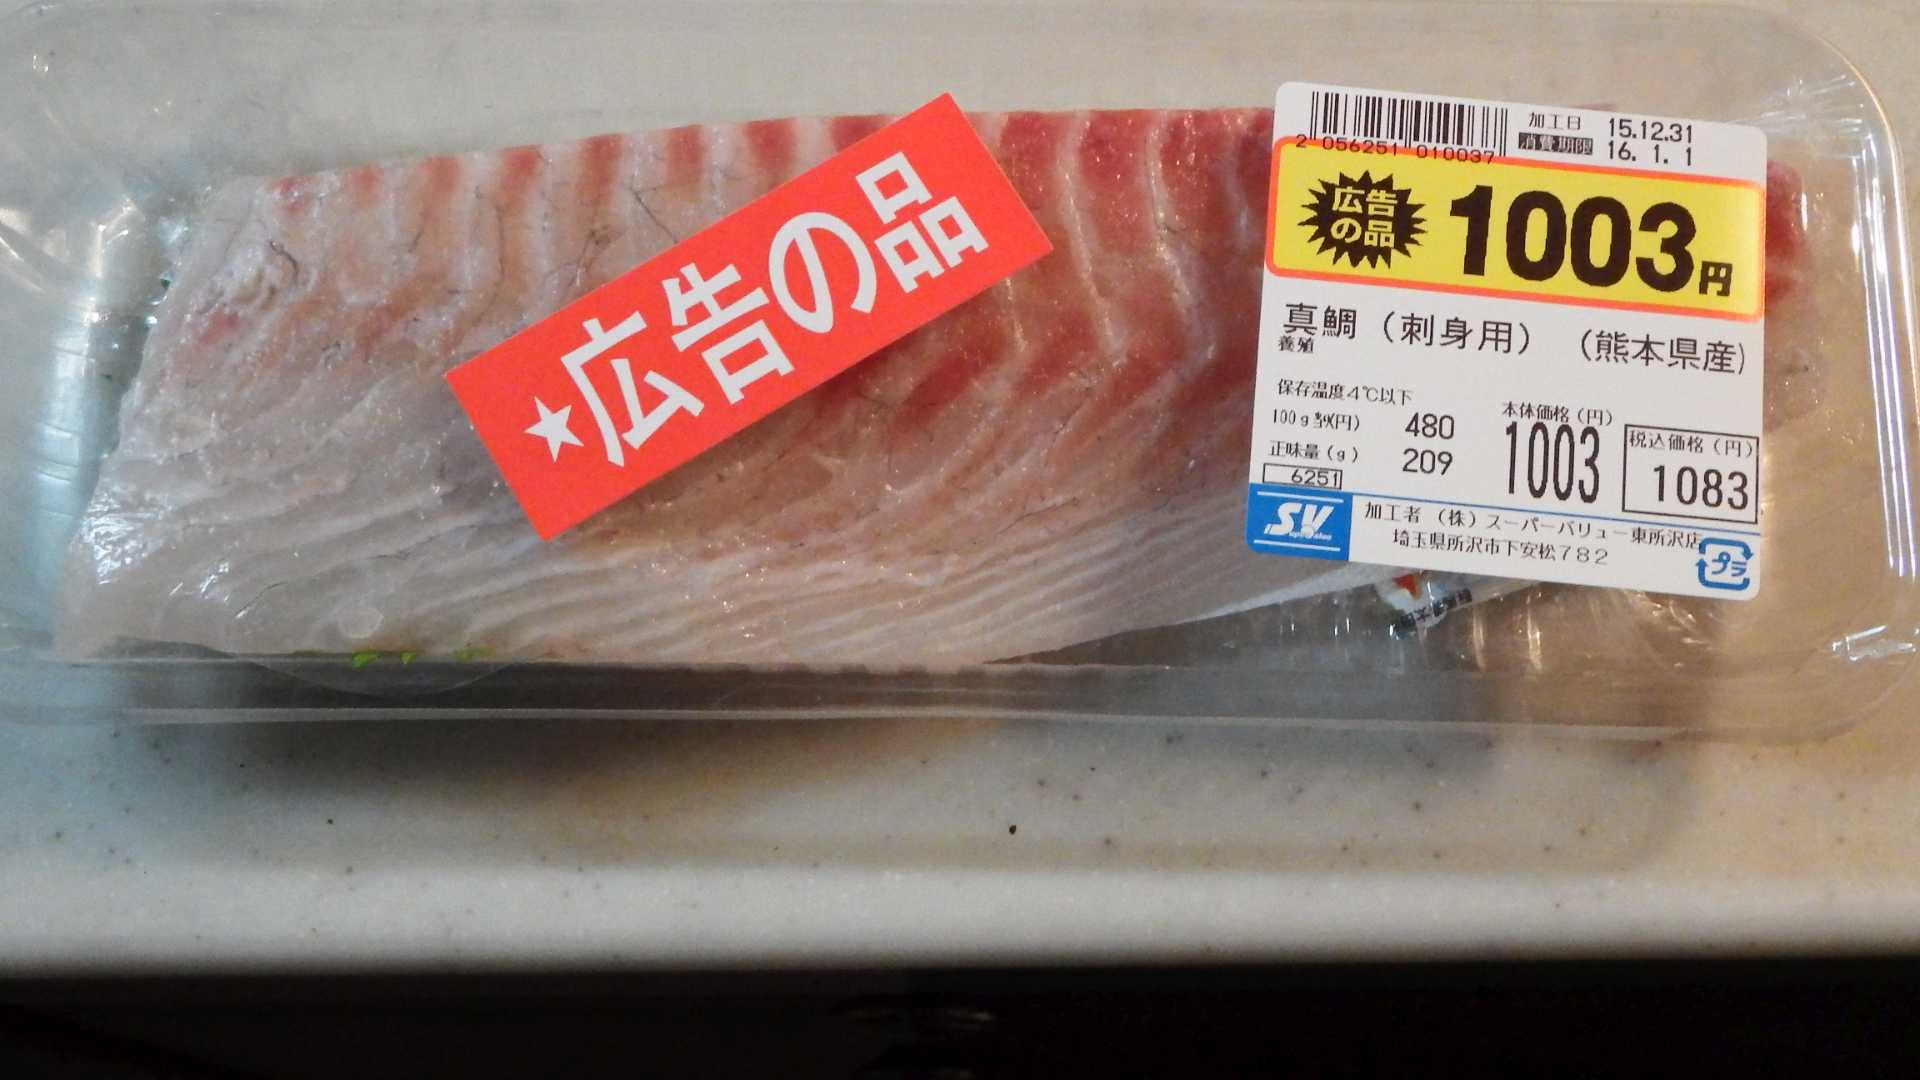 次、スーバリューで買った熊本県産の鯛の刺身です。